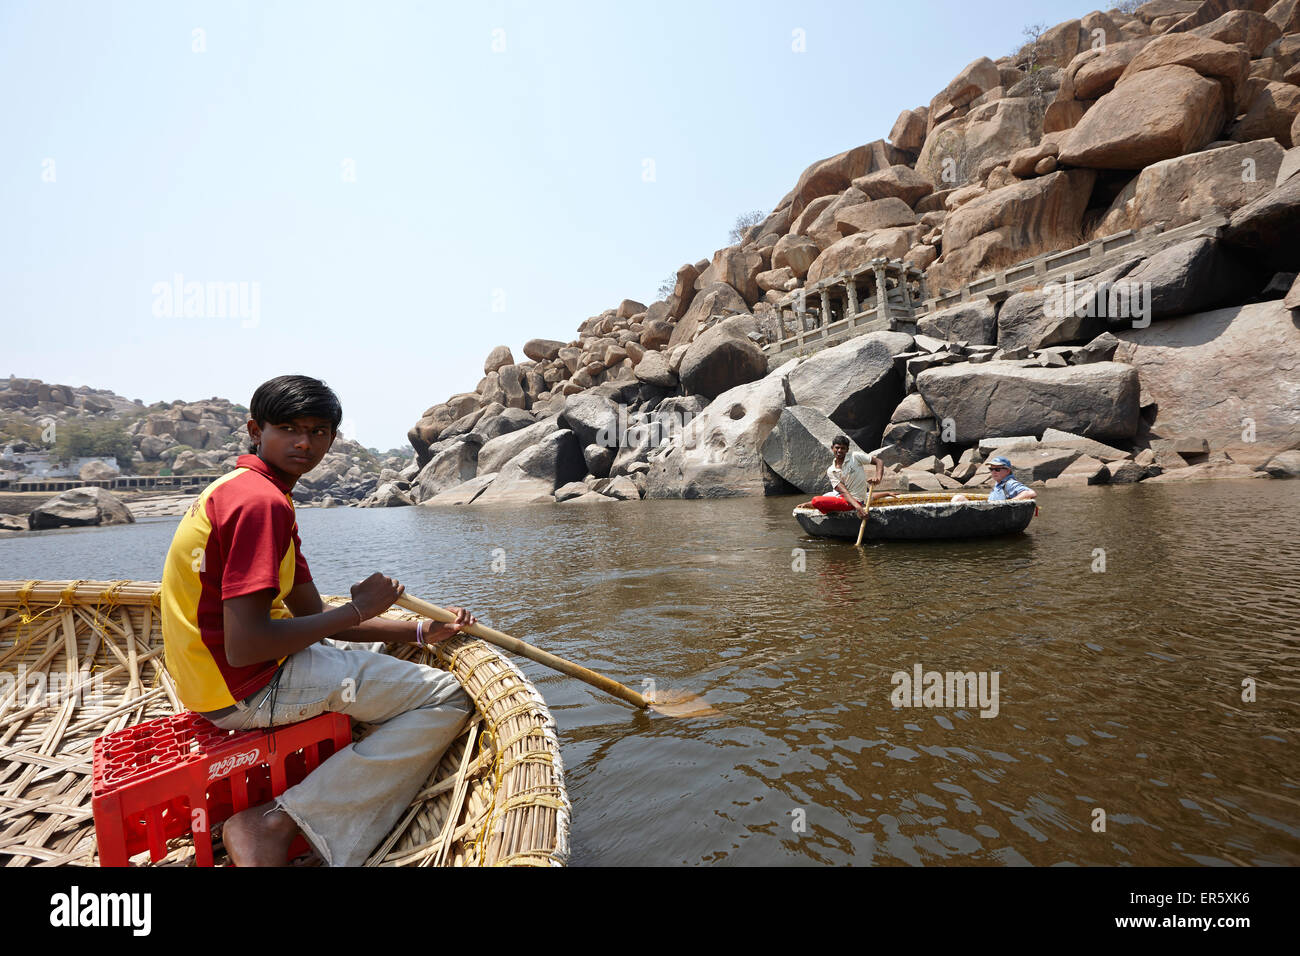 Bootsfahrt in traditionellen runden Coracle Ruderboote, Tungabhadra Fluss, Hampi, Karnataka, Indien Stockfoto